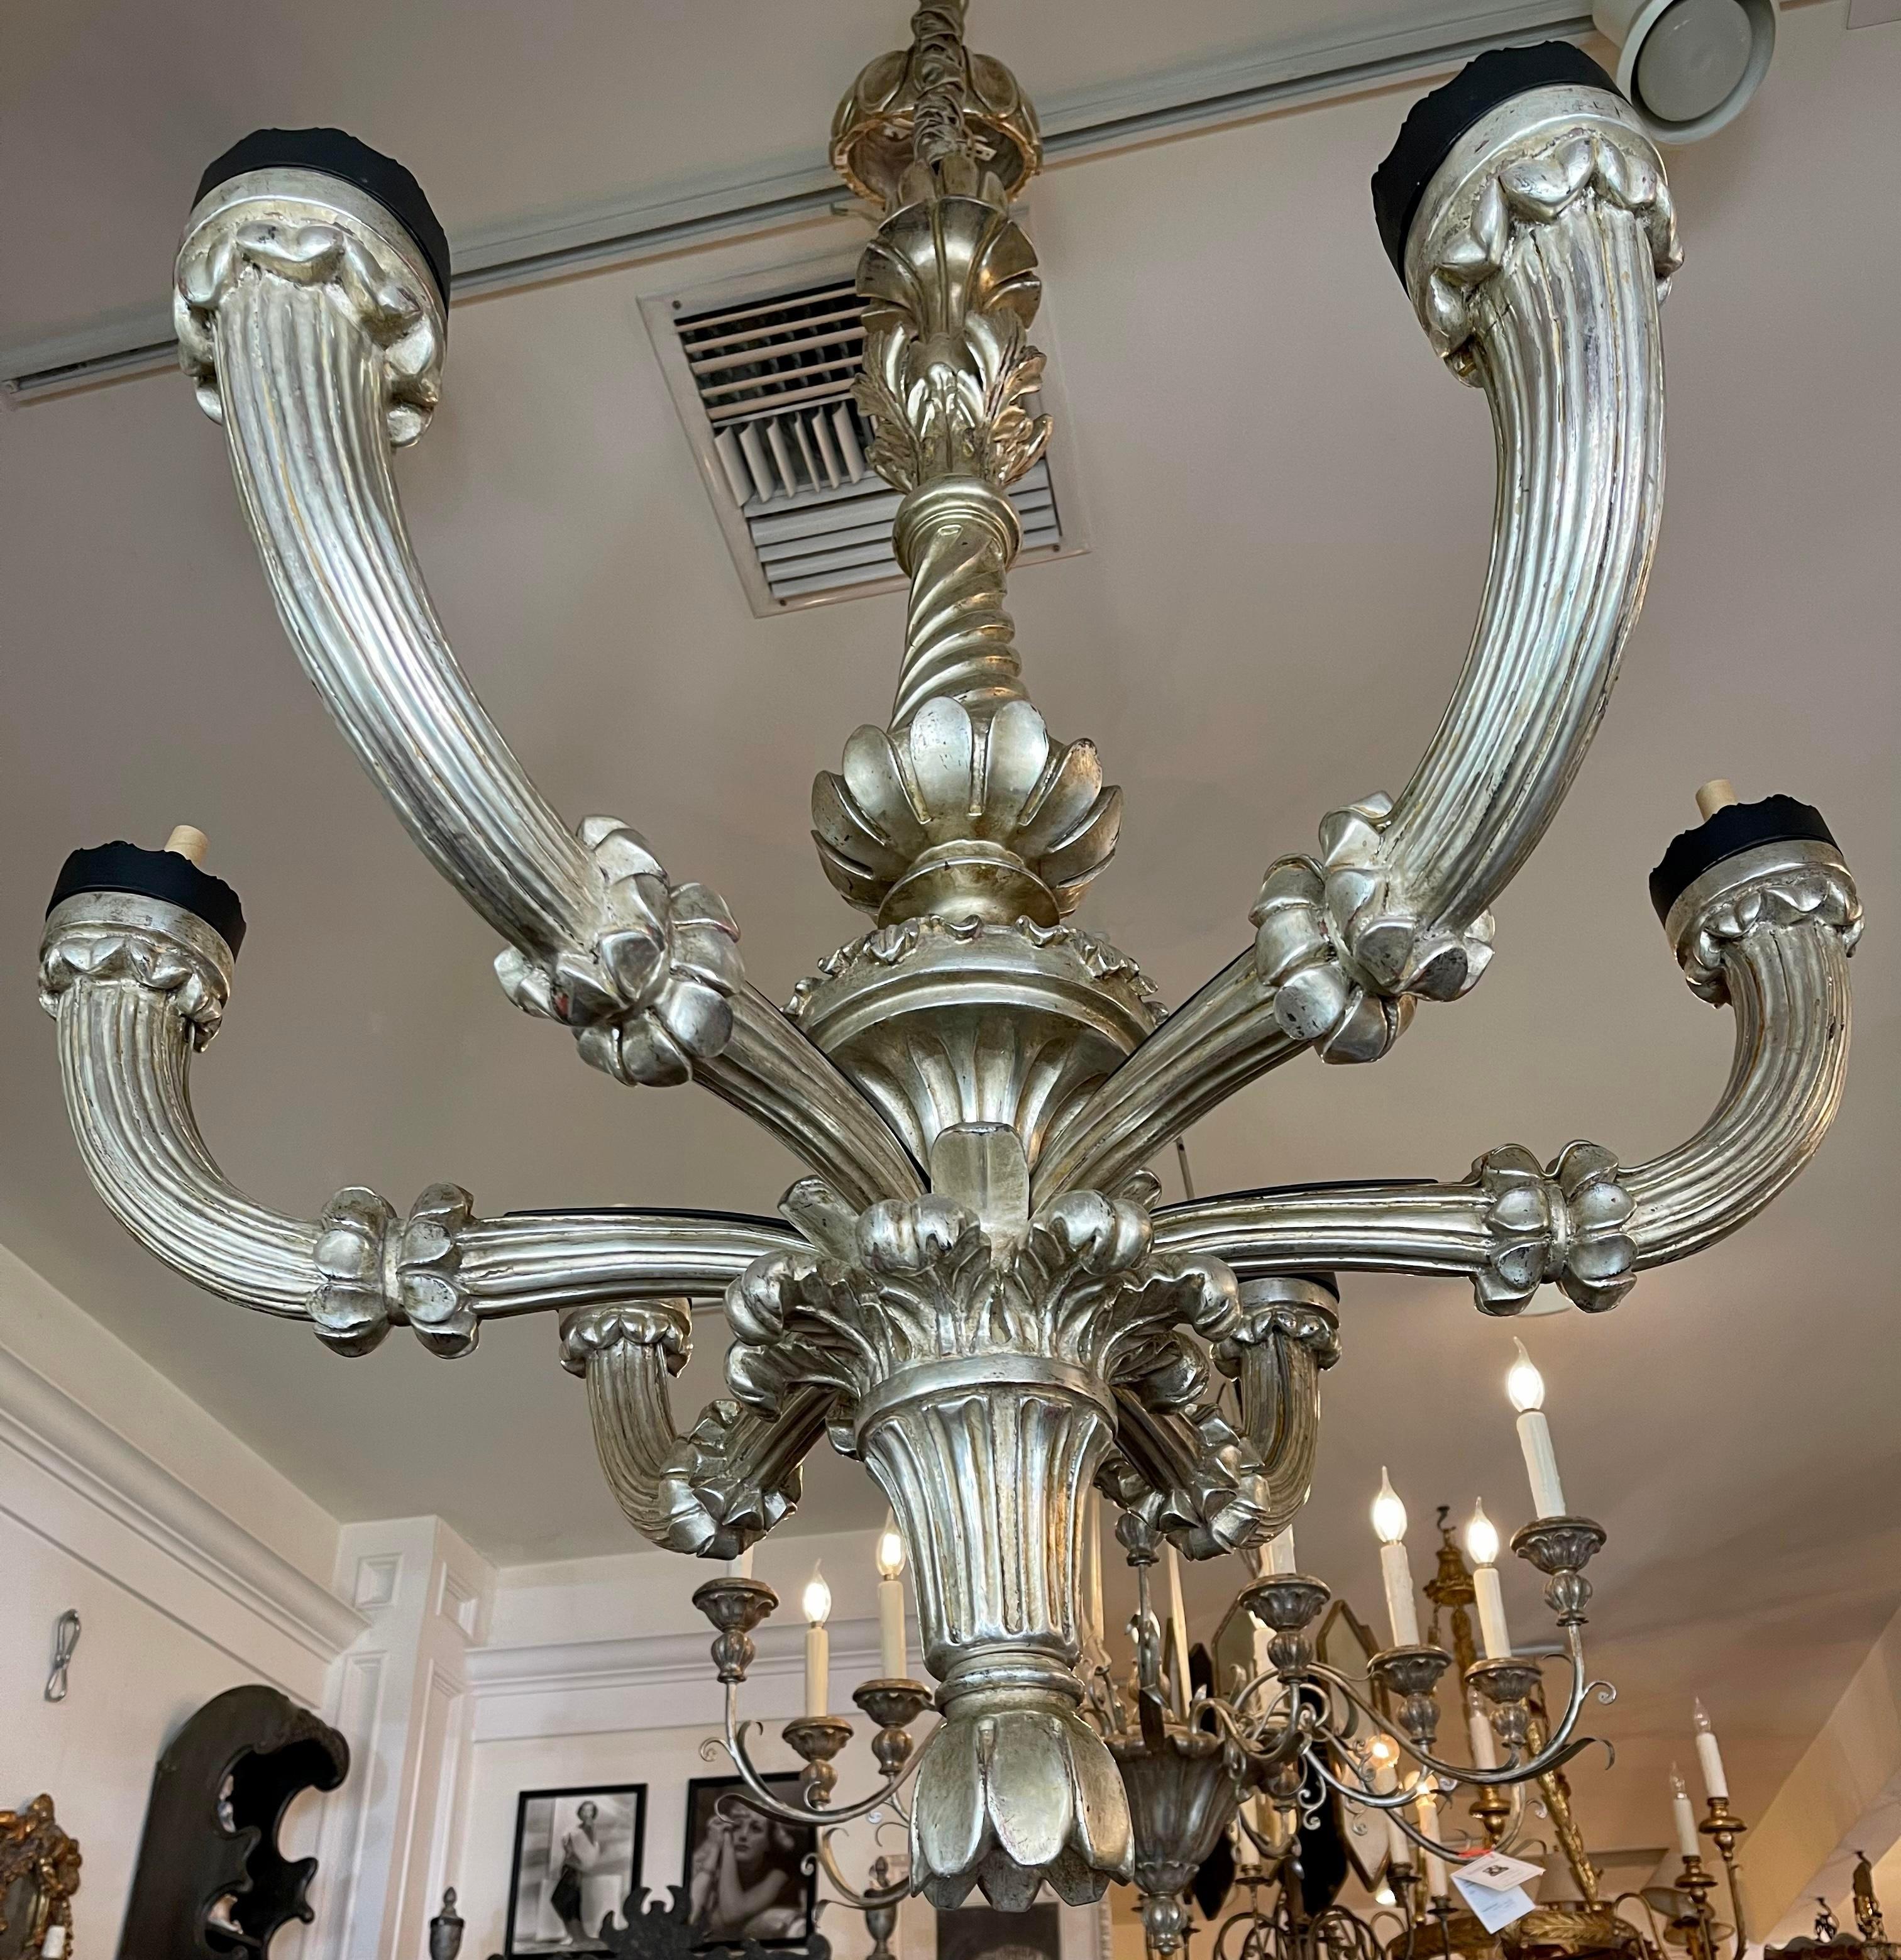 Paul Ferrante celestial 6 arm giltwood chandelier.